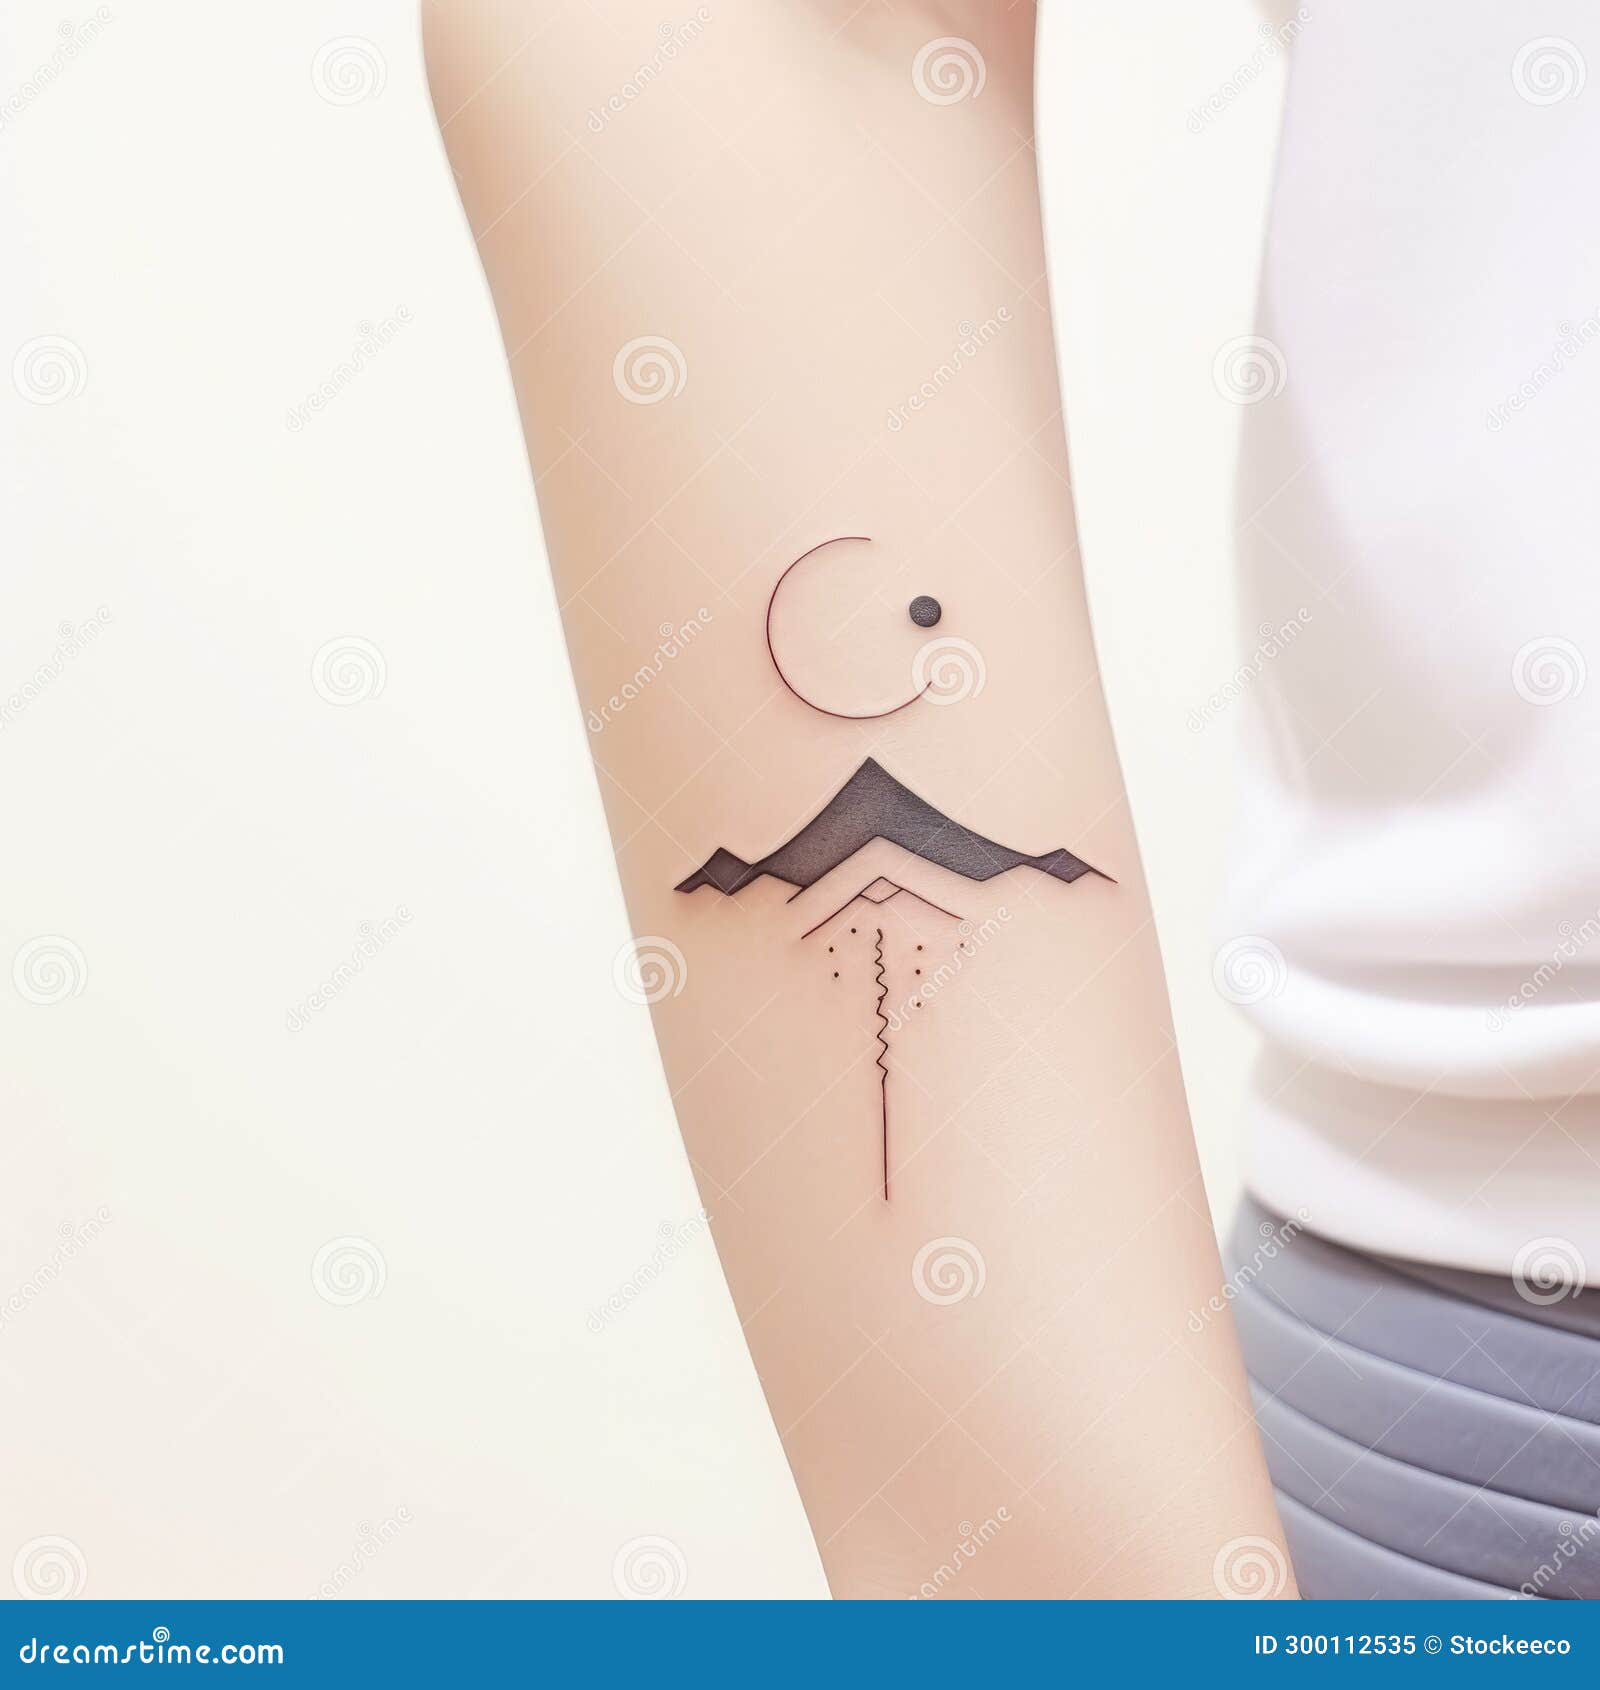 Minimalist tattoos on both forearms